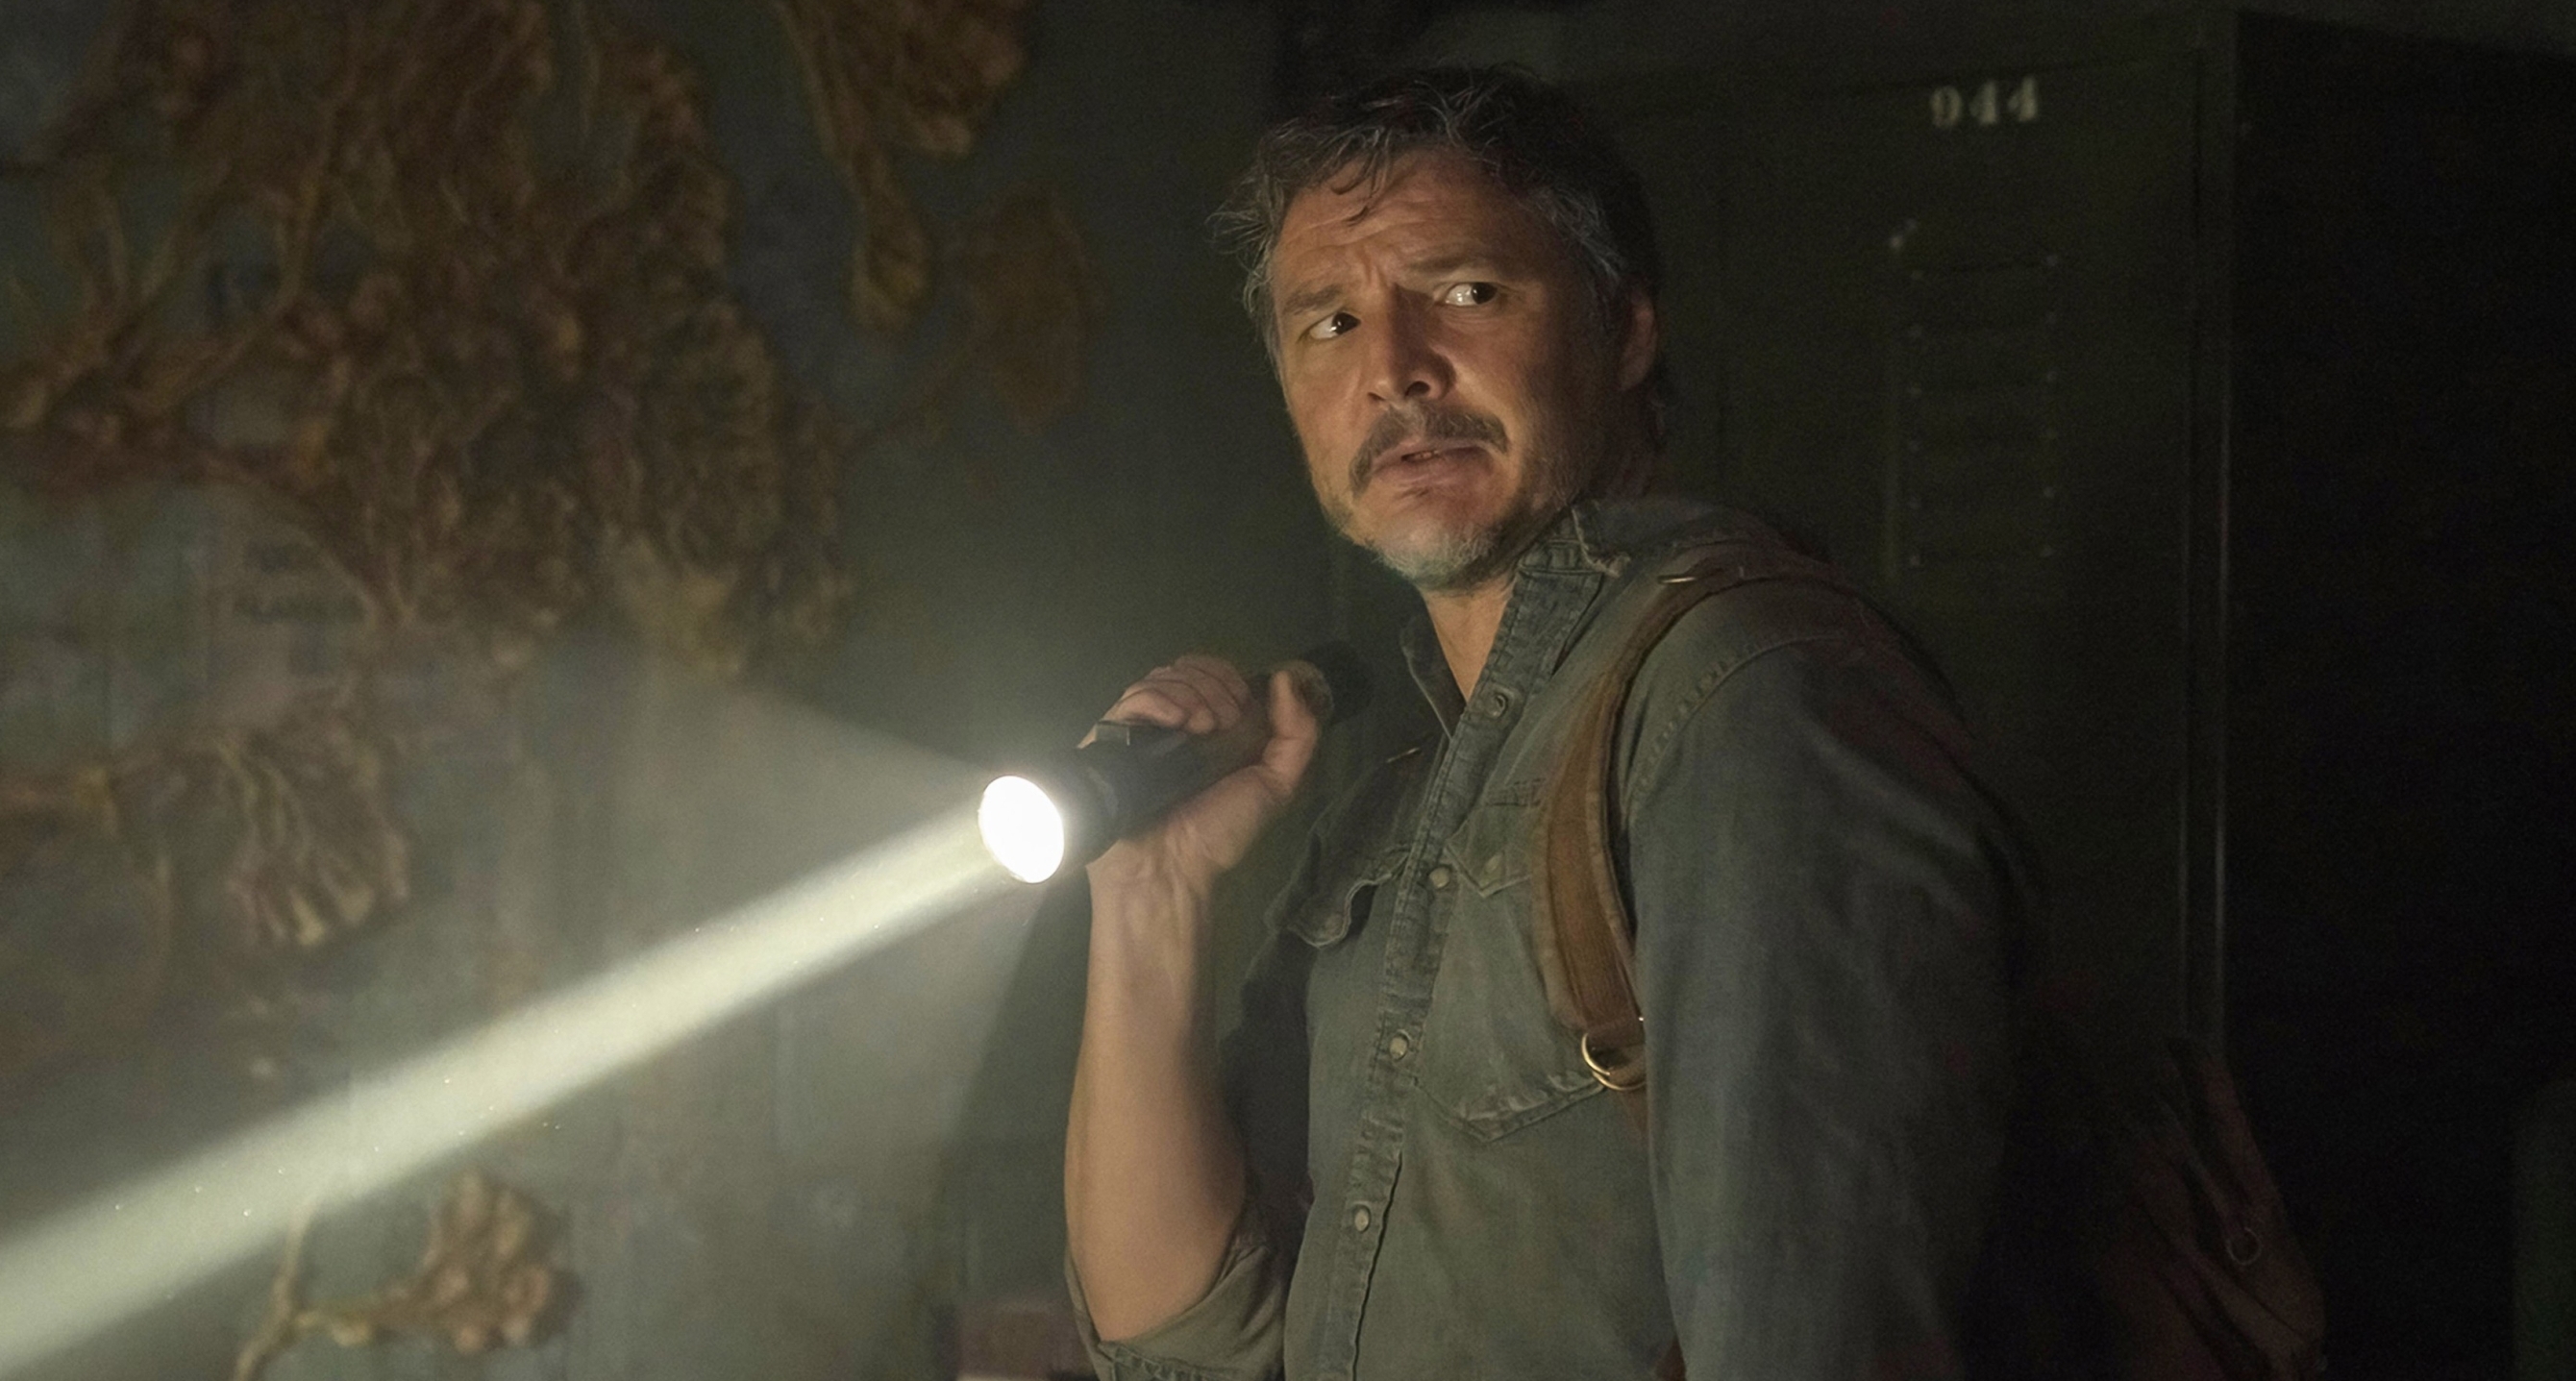 Pogledali smo The Last of Us, novu HBO seriju oko koje se stvorio baš veliki hype